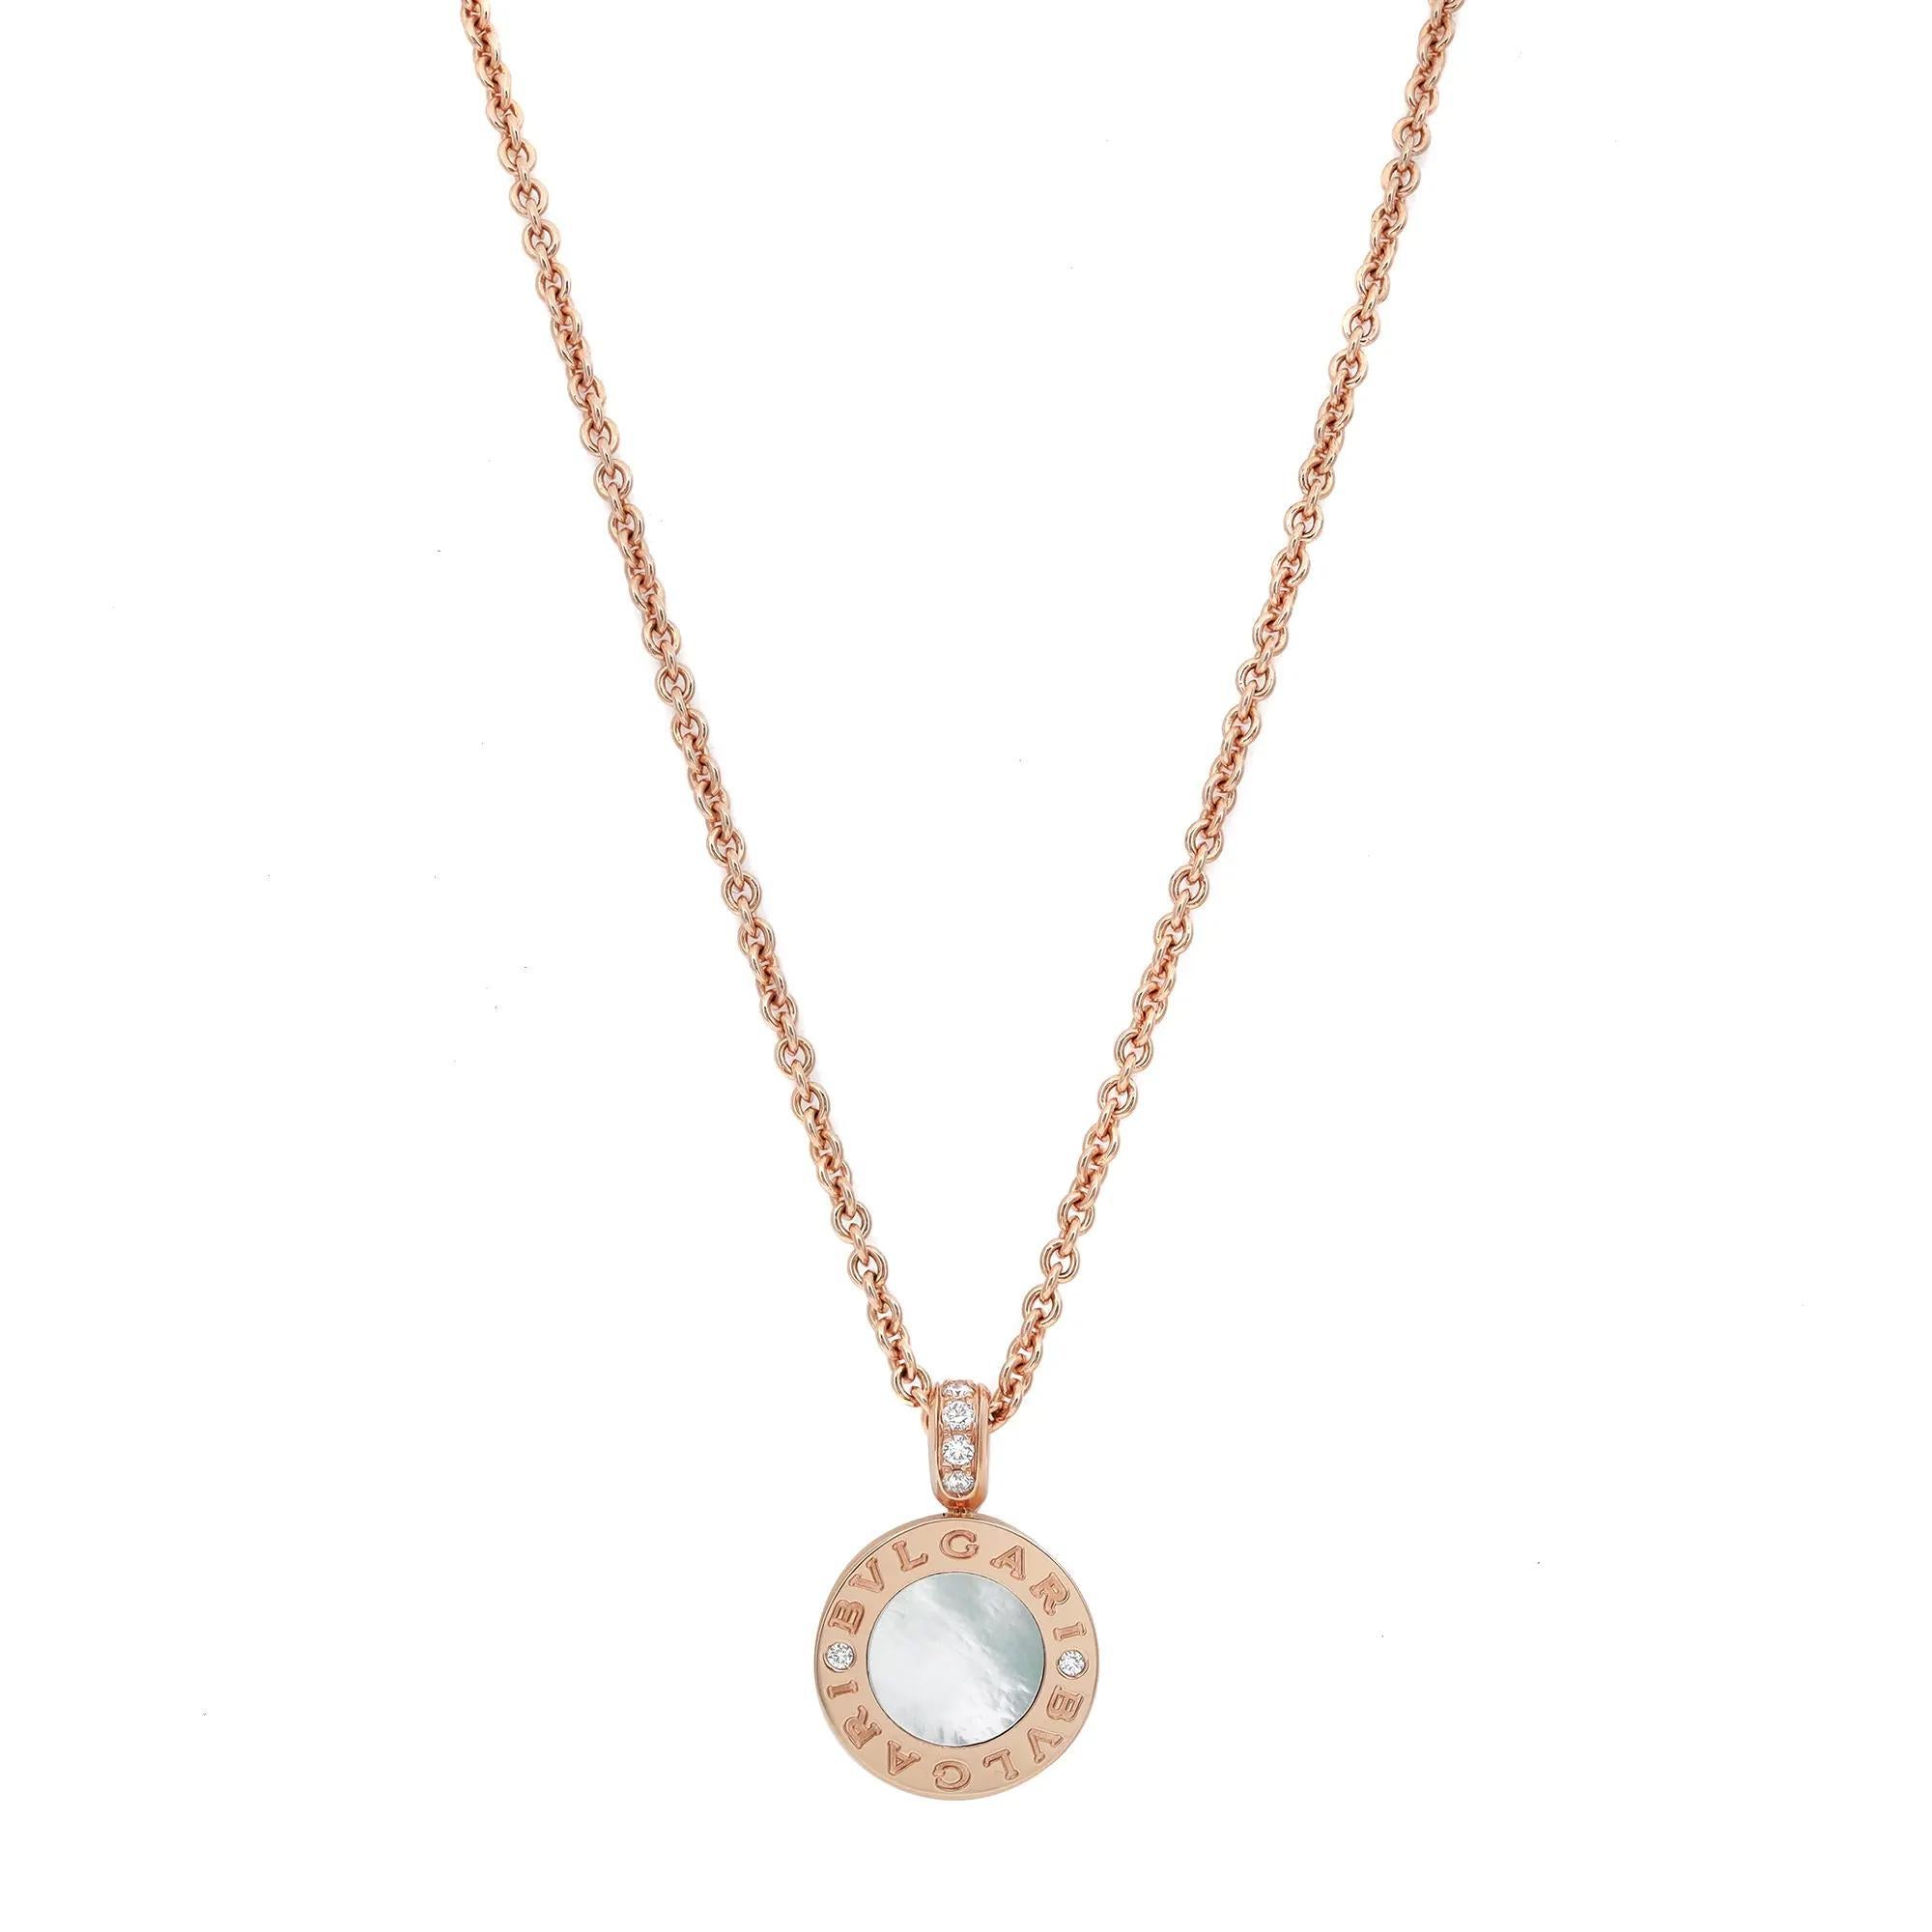 Fusion élégante de culture et de modernité, ce collier pendentif BVLGARI est réalisé en or rose 18 carats lustré. Il comporte un pendentif rond avec le logo Bvlgari gravé et des diamants taillés en rond des deux côtés encadrant des pierres